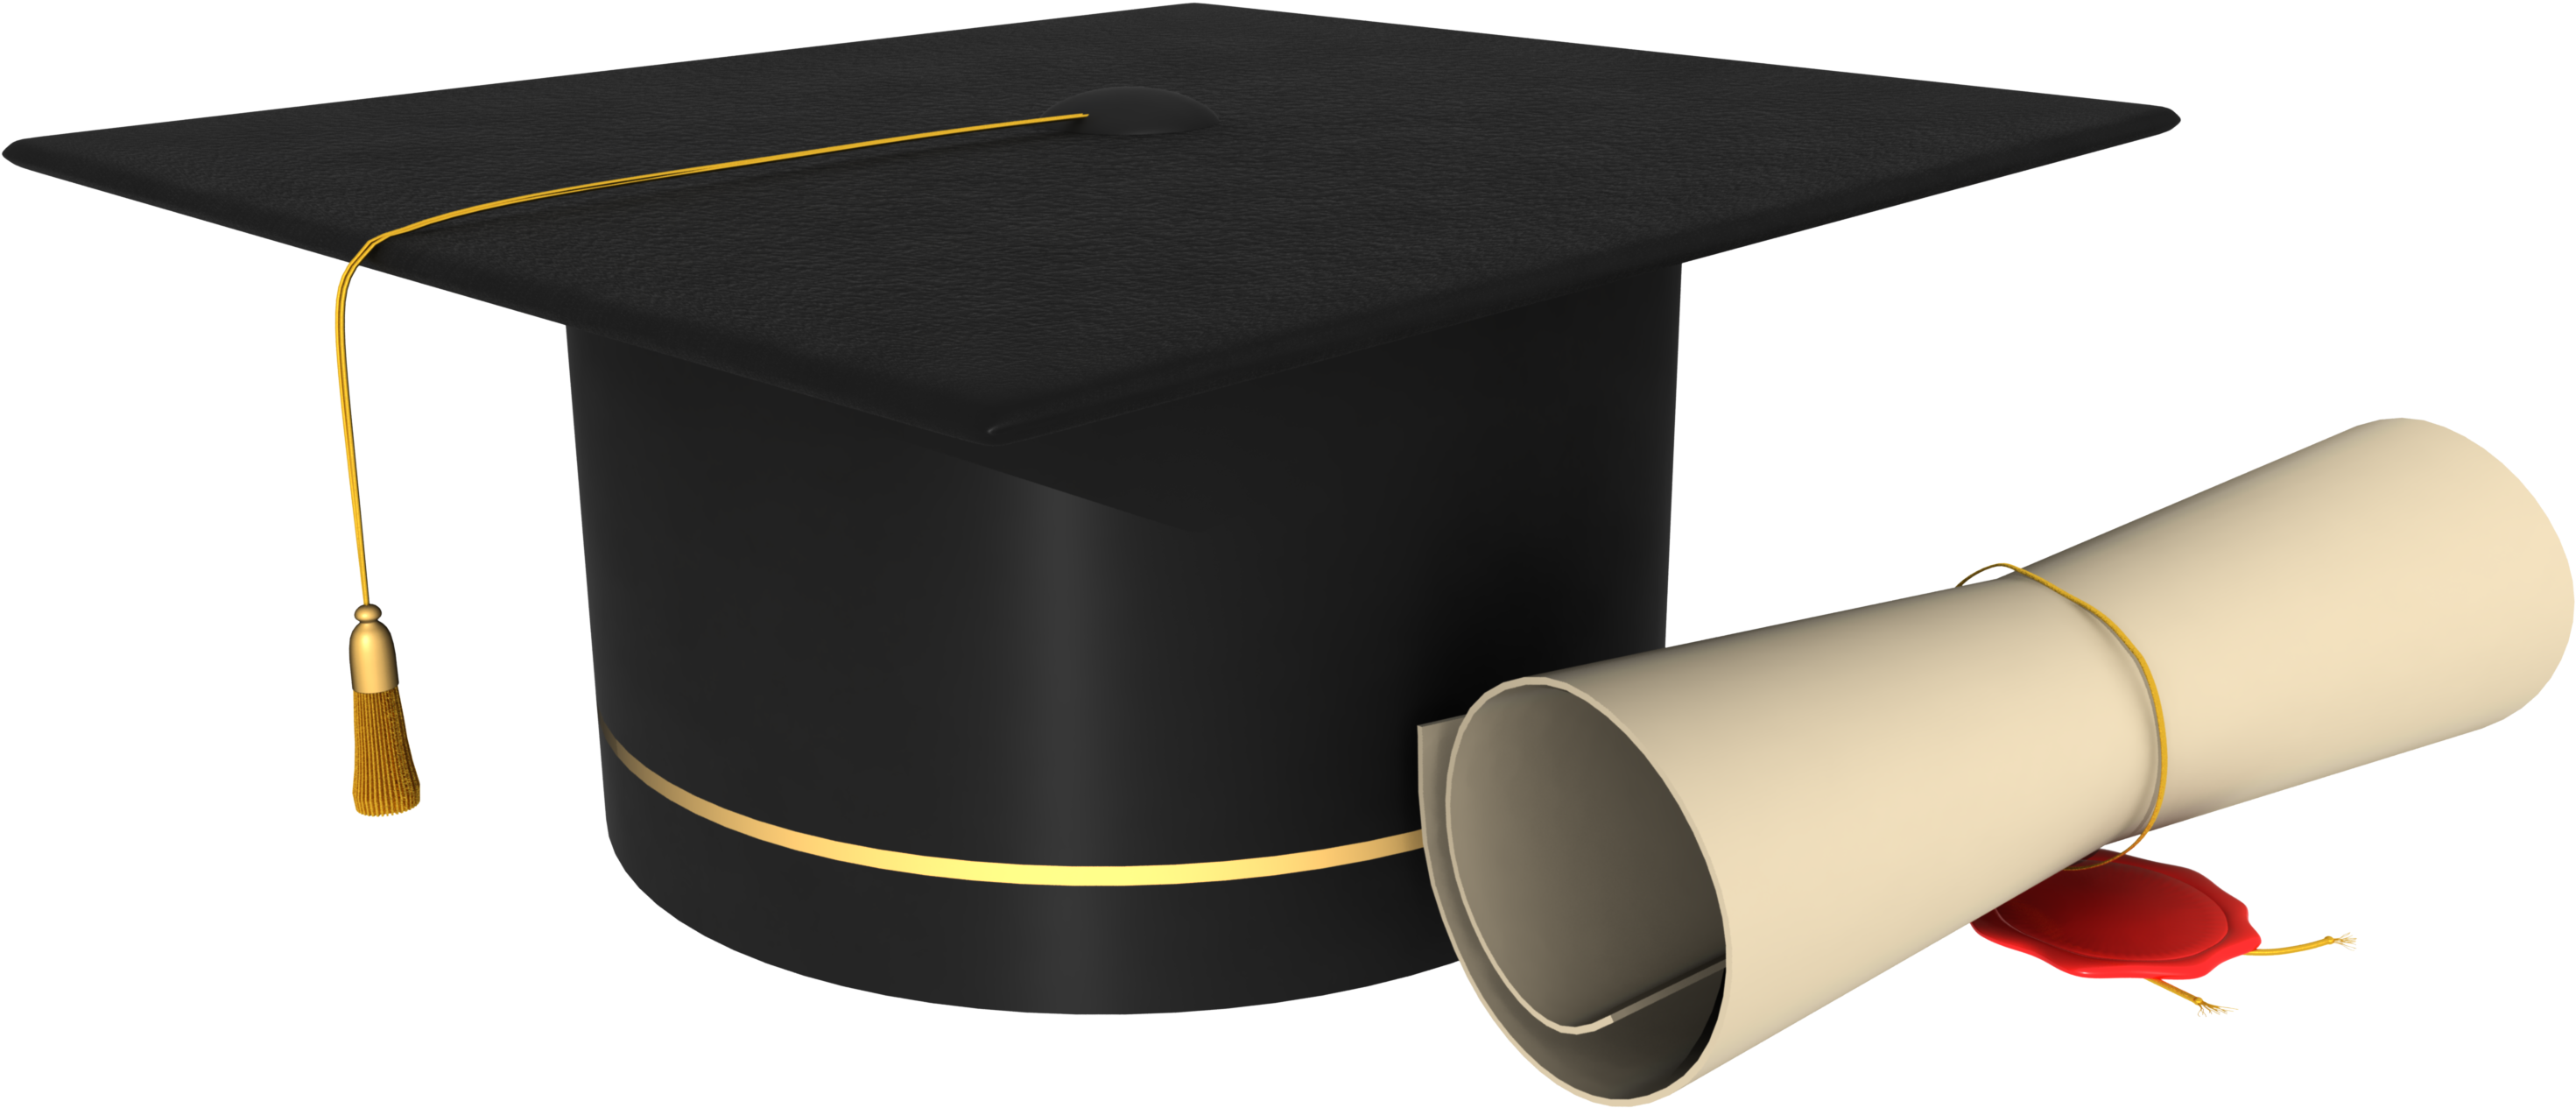 Graduation Cap Clip Art Image - Graduation Cap And Degree Png (3189x2000)